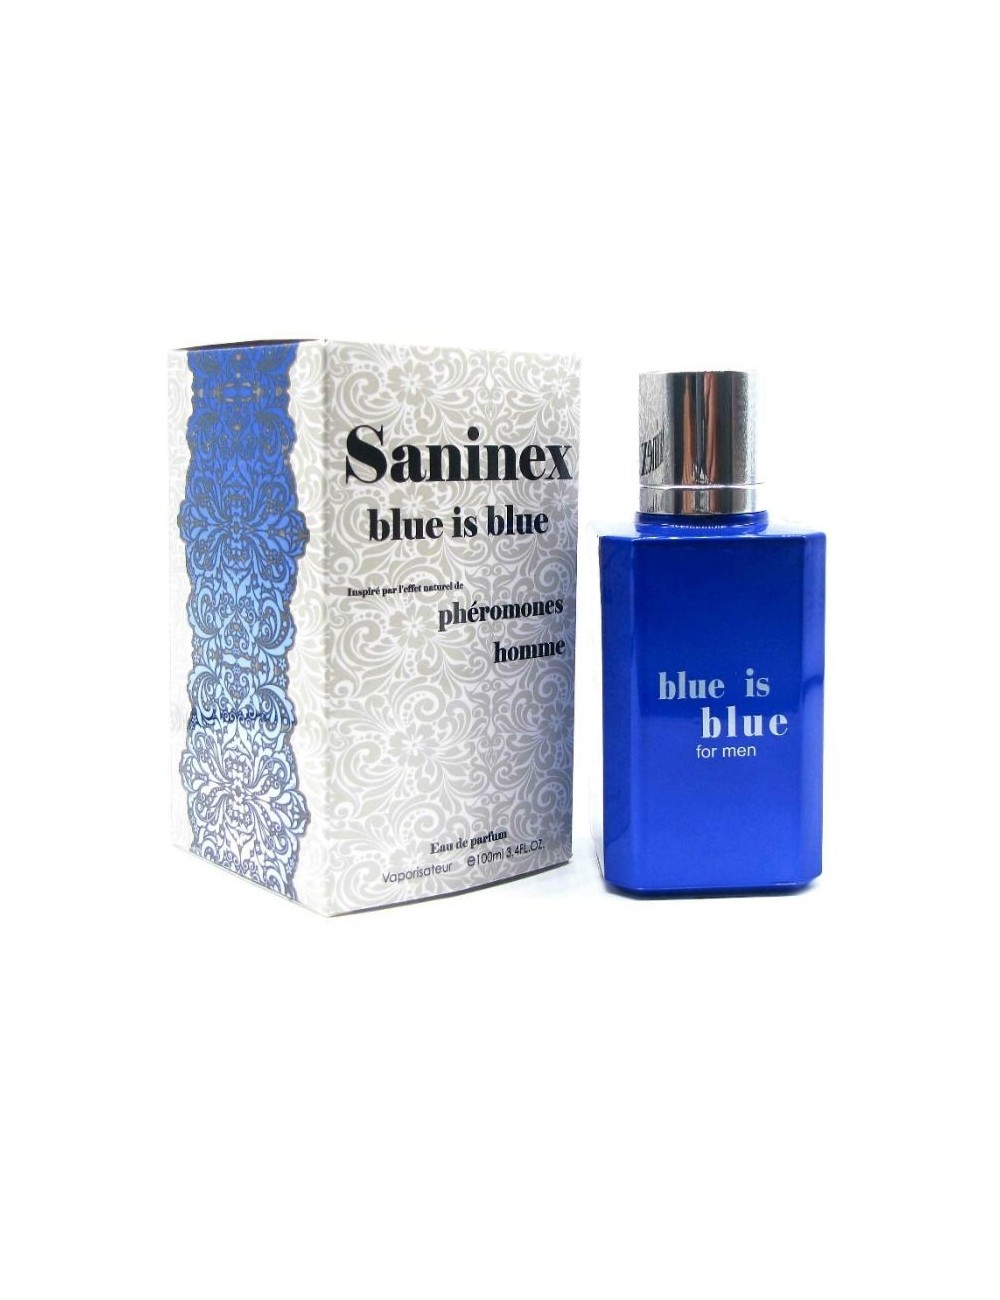 PARFUM AUX PHEROMONES HOMME SANINEX BLUE IS BLUE - Aphrodisiaques - Saninex Fragance